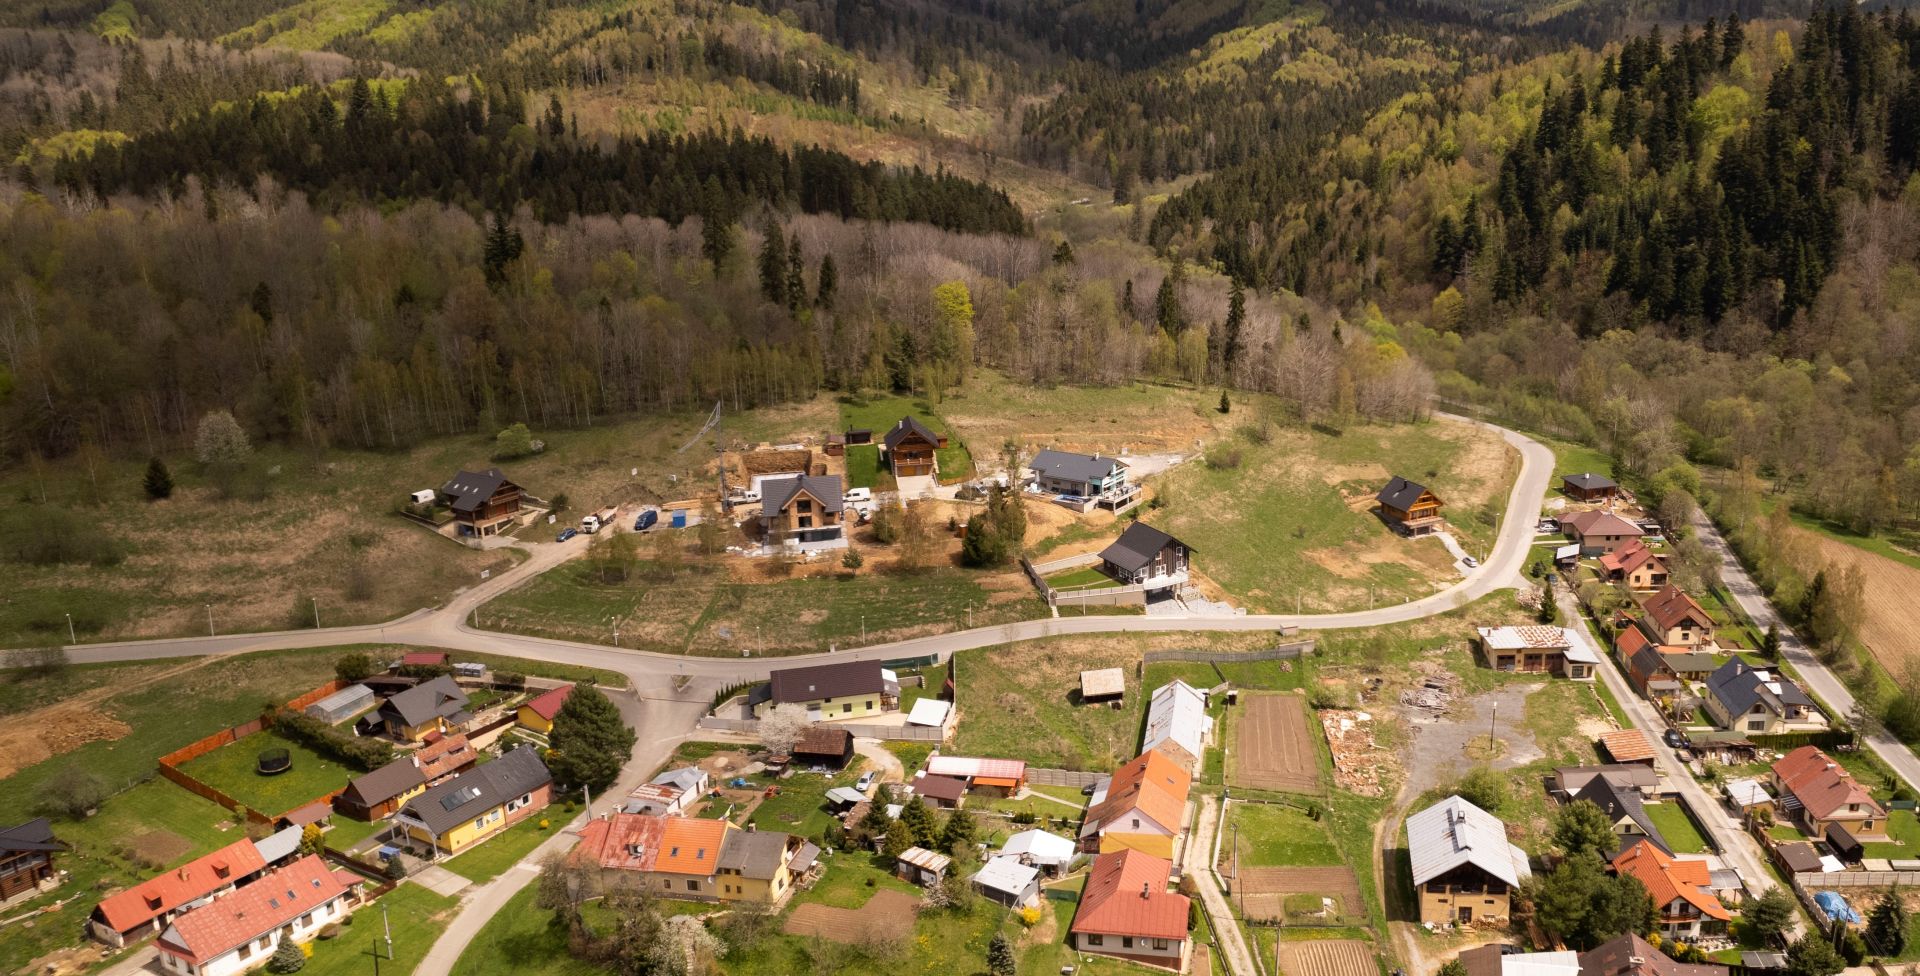 NA PREDAJ: Stavebný pozemok, Levoča – Levočská dolina, Slnečná úboč, rozloha celkom 1150 m2